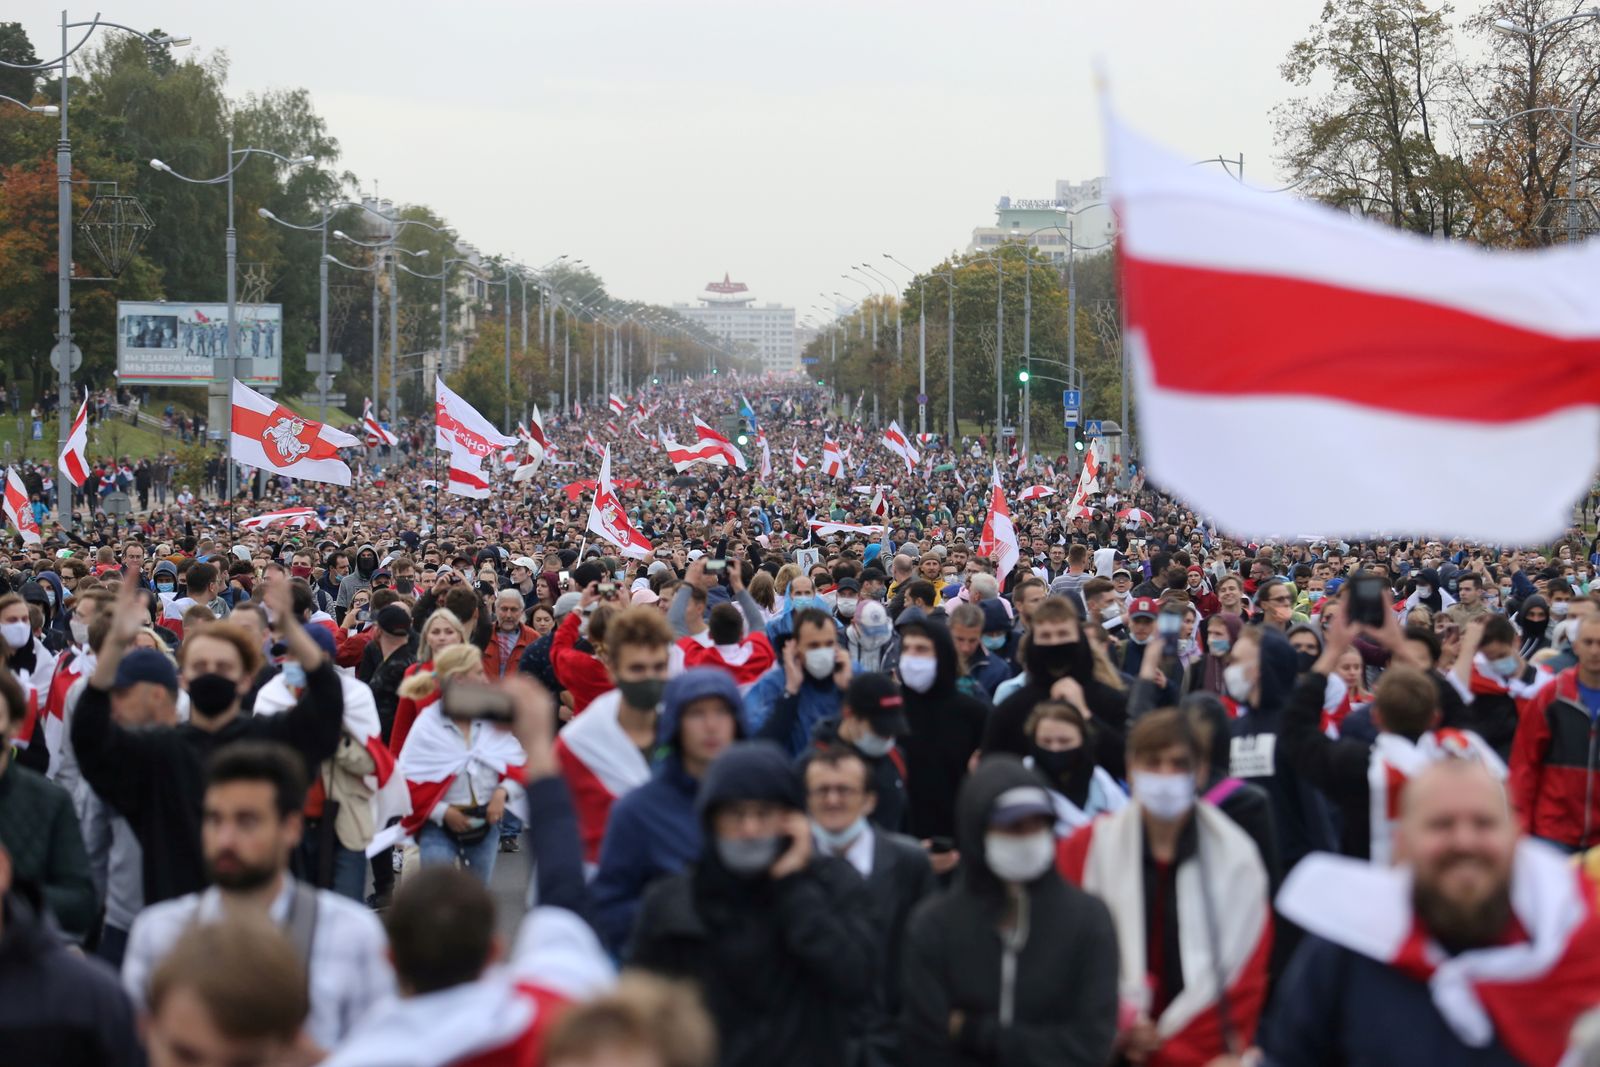 تظاهرة في مينسك احتجاجاً على نتائج انتخابات الرئاسة - 27 سبتمبر 2020 - REUTERS